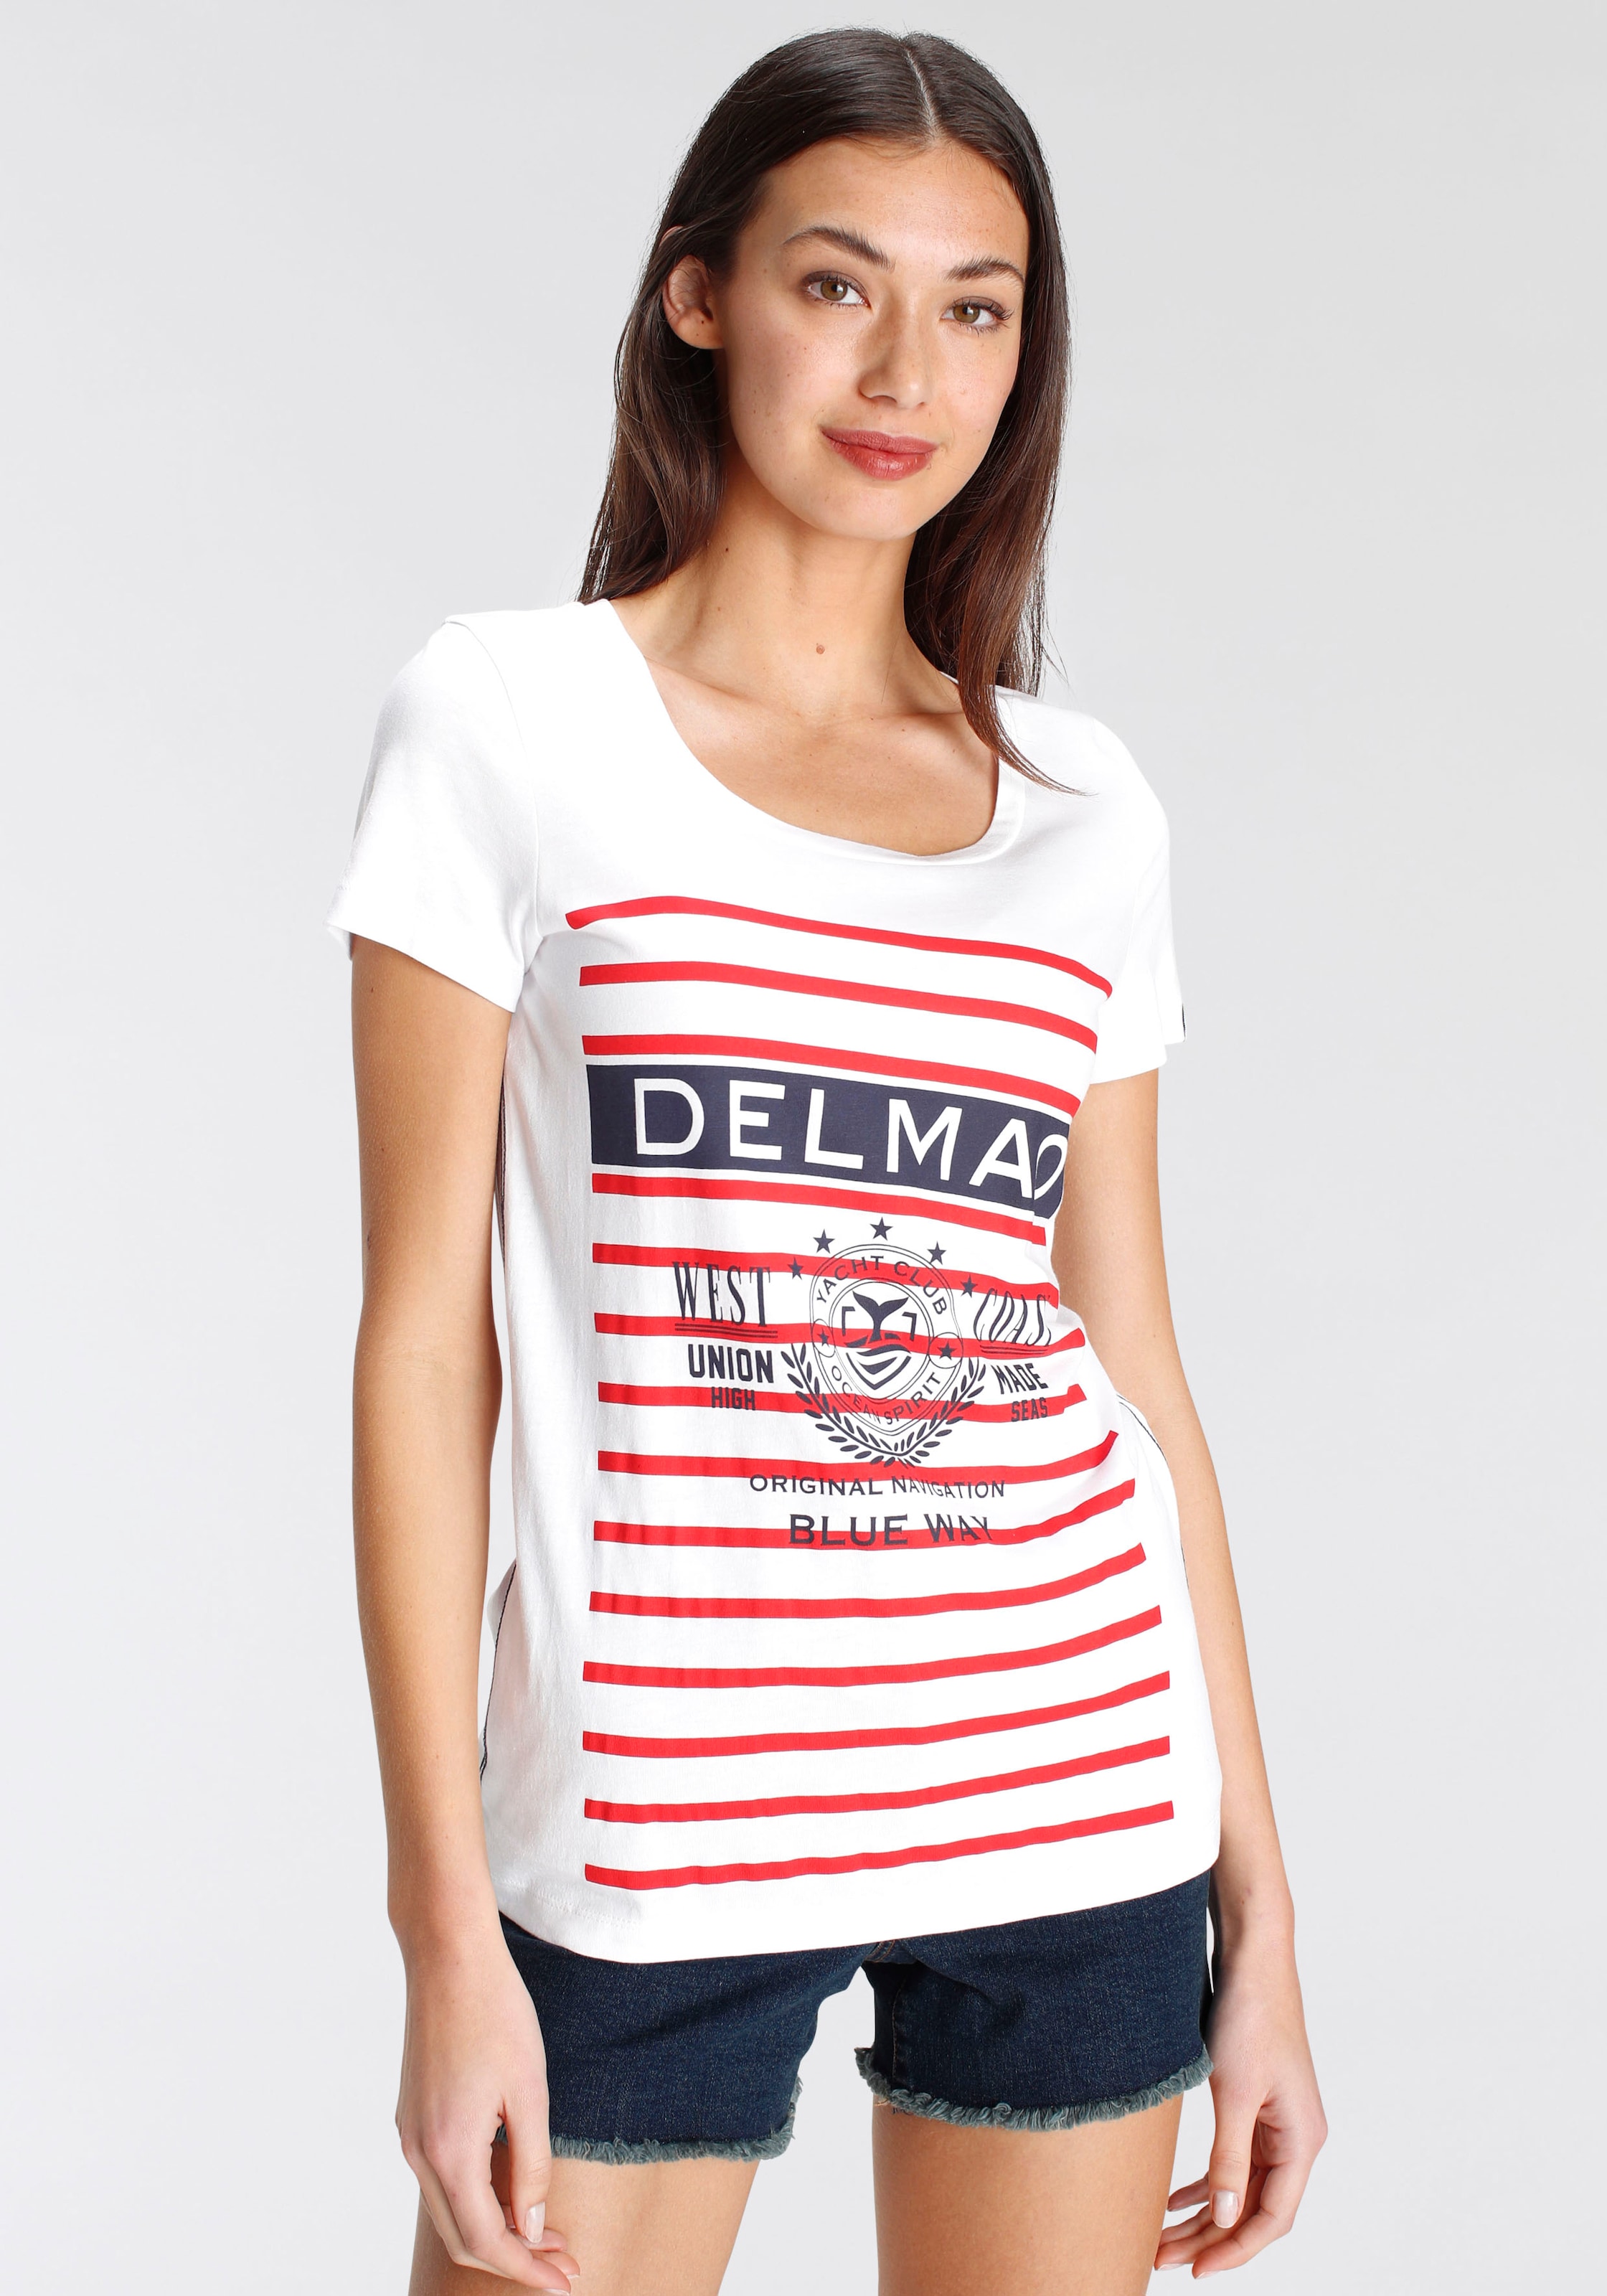 DELMAO Print-Shirt, mit sportivem grossen Jelmoli-Versand MARKE! NEUE Schweiz bei Marken-Logodruck shoppen - online